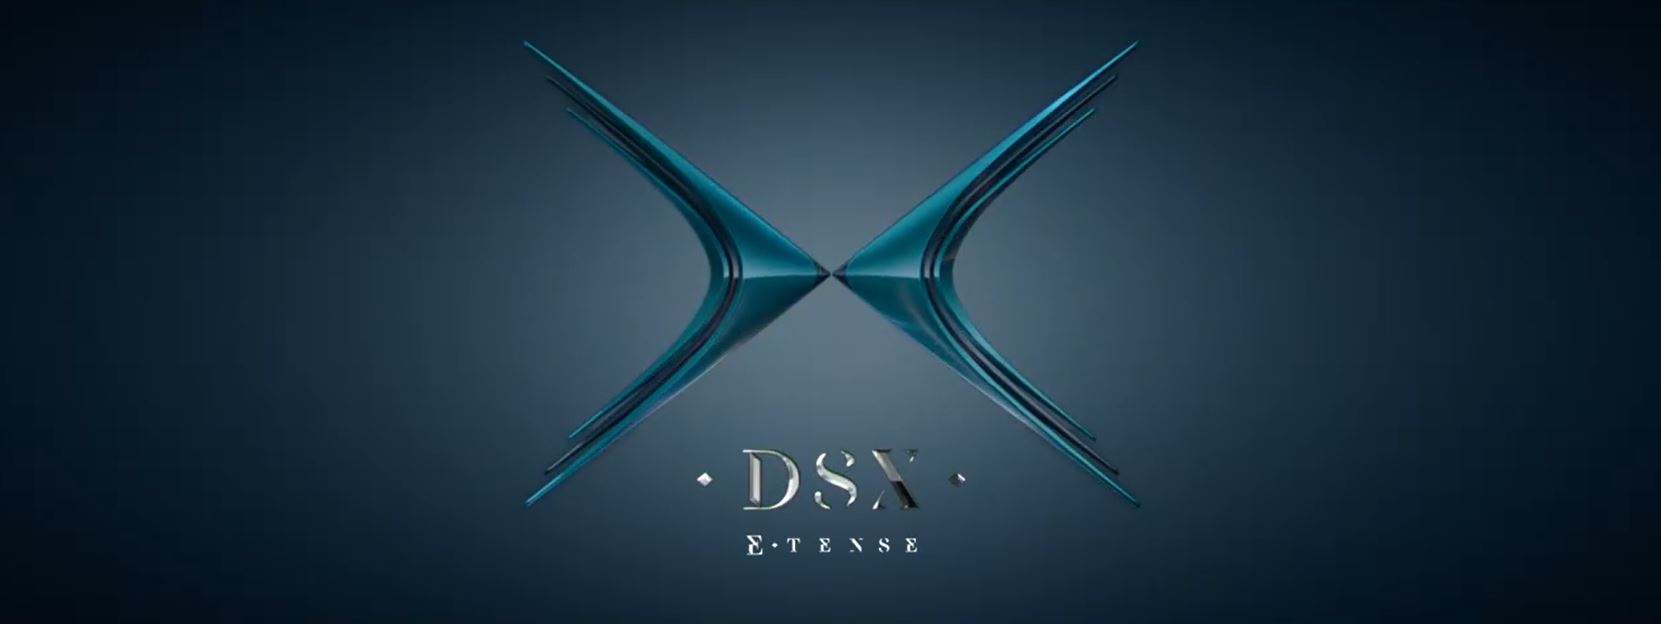 DSX E.tense